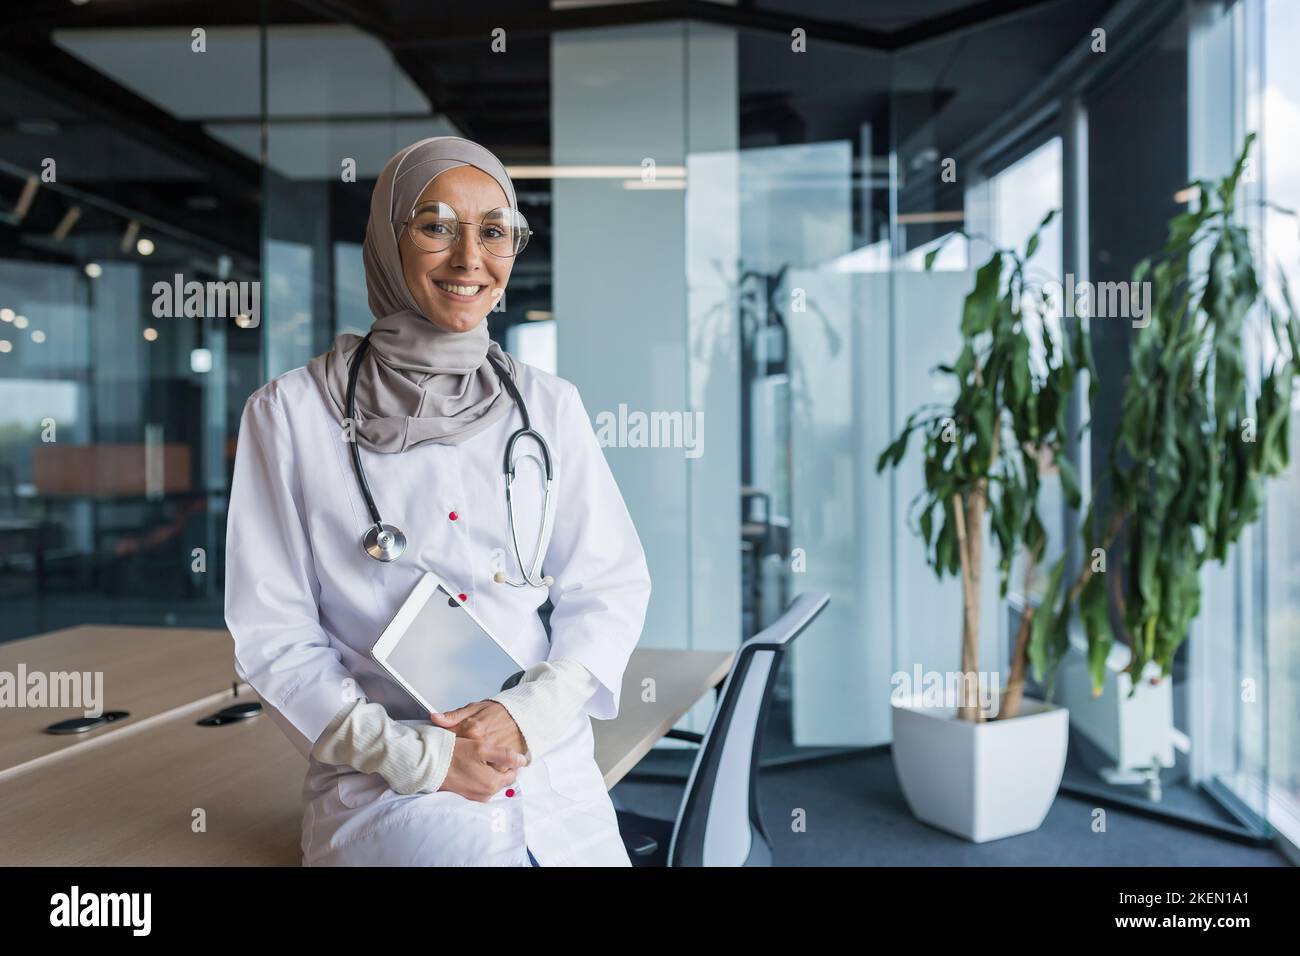 Portrait d'une jeune femme arabe musulmane heureuse et belle, étudiante assise sur une table dans un grand bureau dans un hôpital, tenant une tablette entre ses mains, regardant la caméra, souriant. Banque D'Images